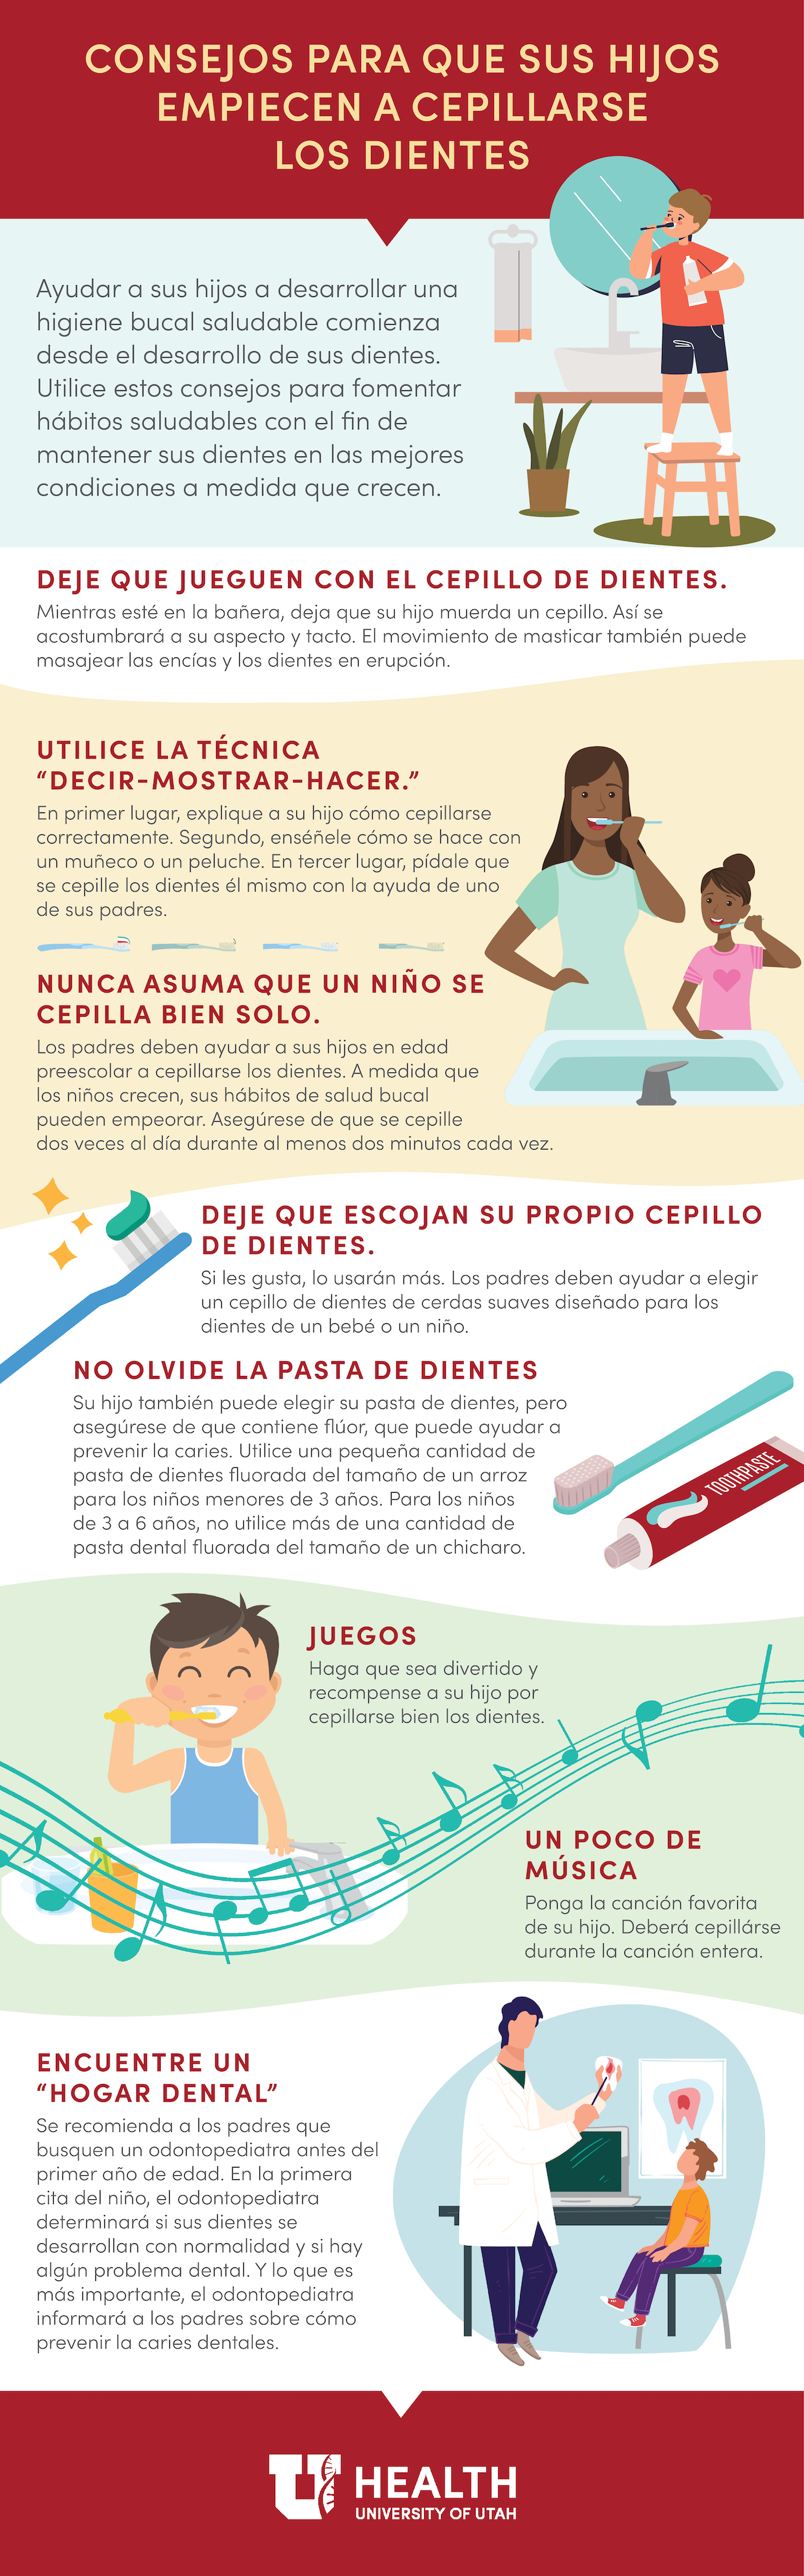 Spanish infographic teeth brushing